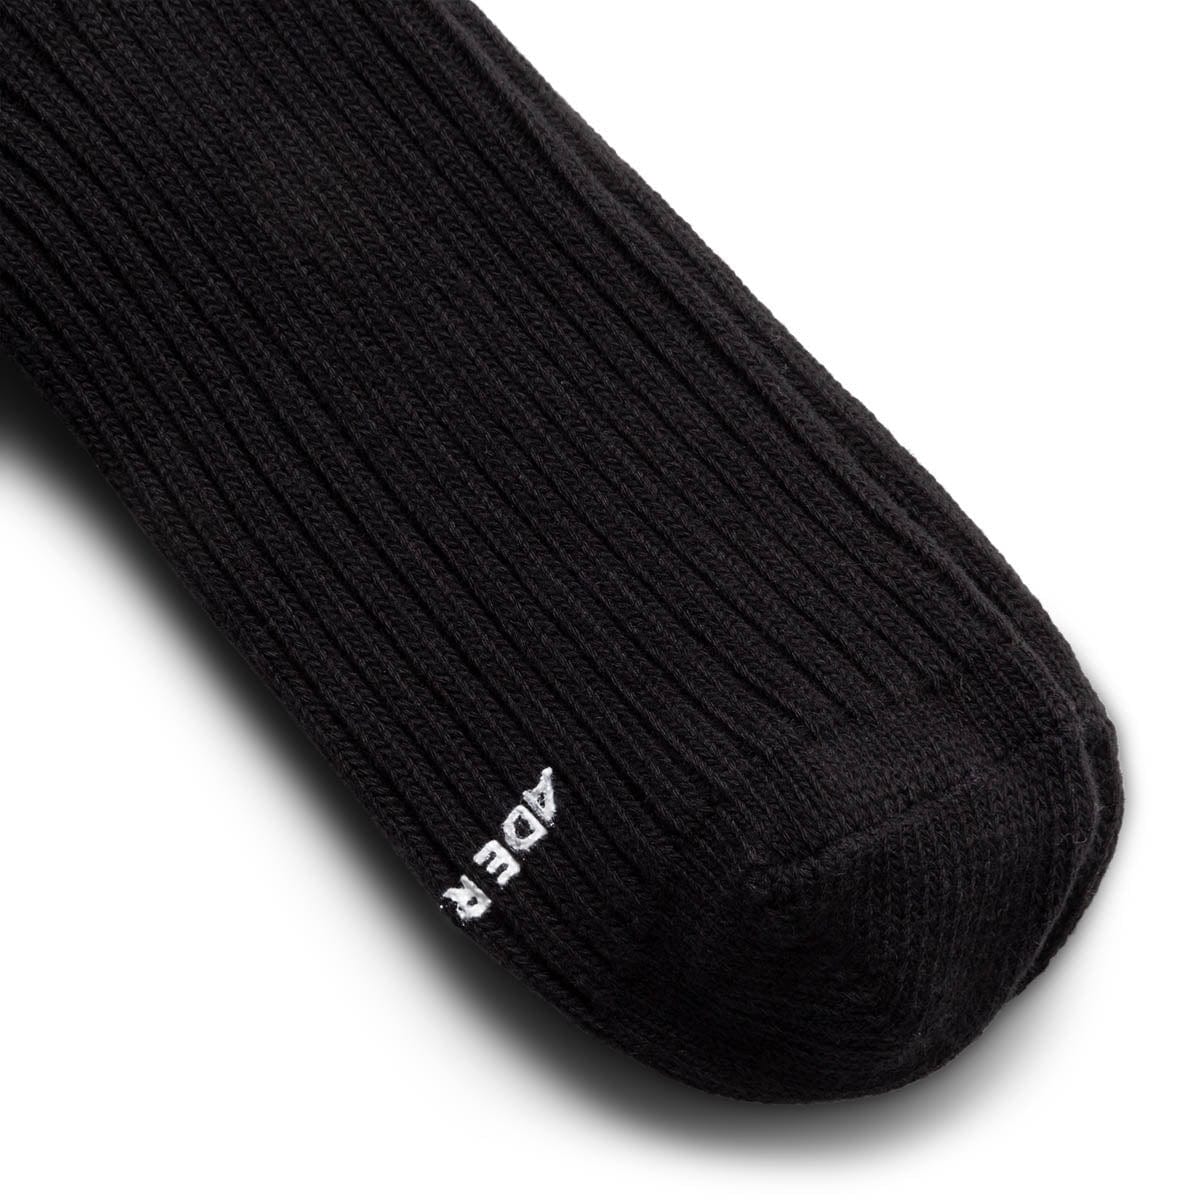 Ader Error Socks BLACK / O/S A-PEEC LOGO SOCKS